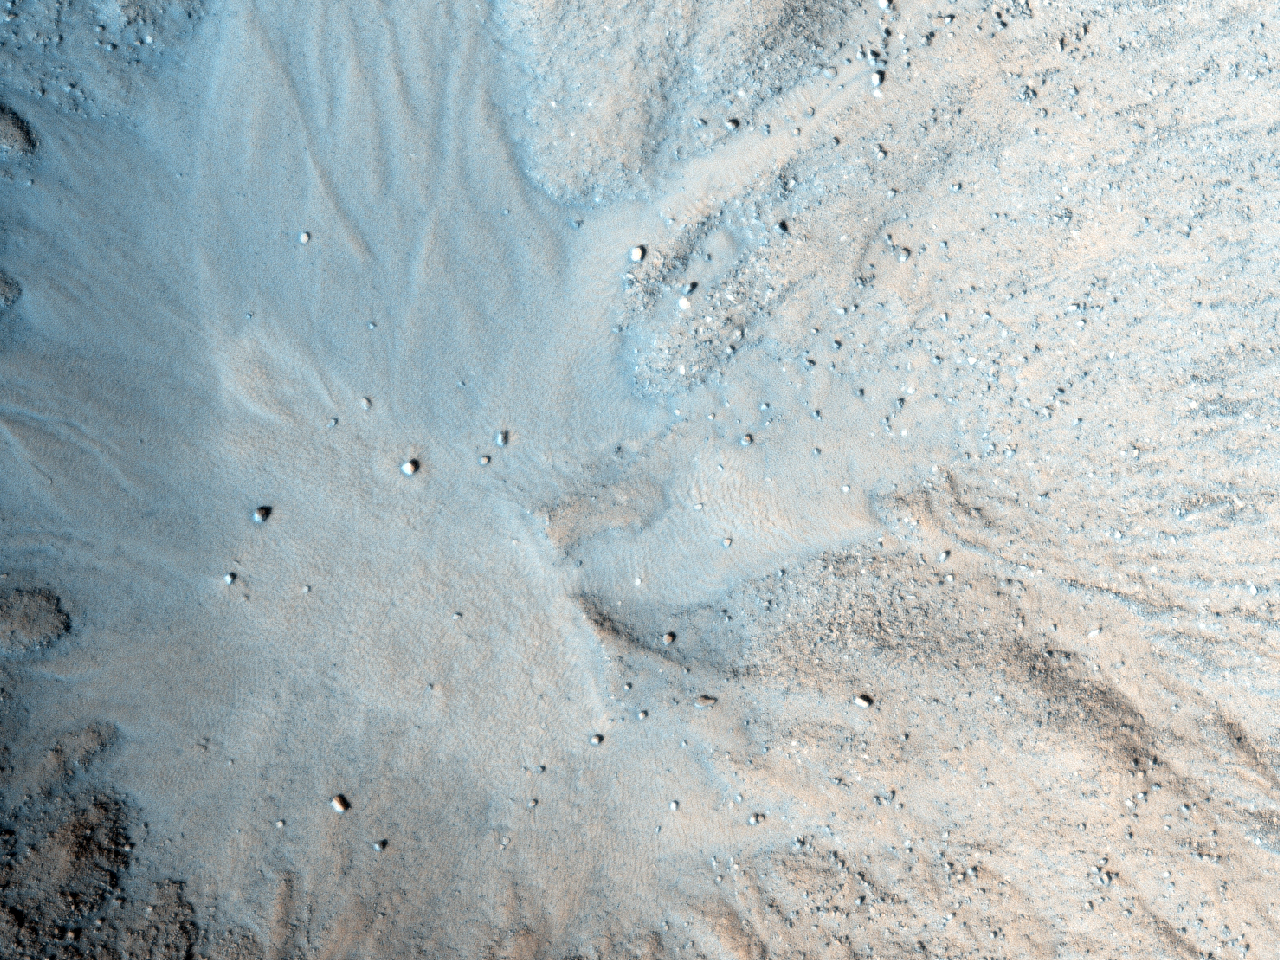 Dik eğimlere sahip yeni oluşmuş bir krater